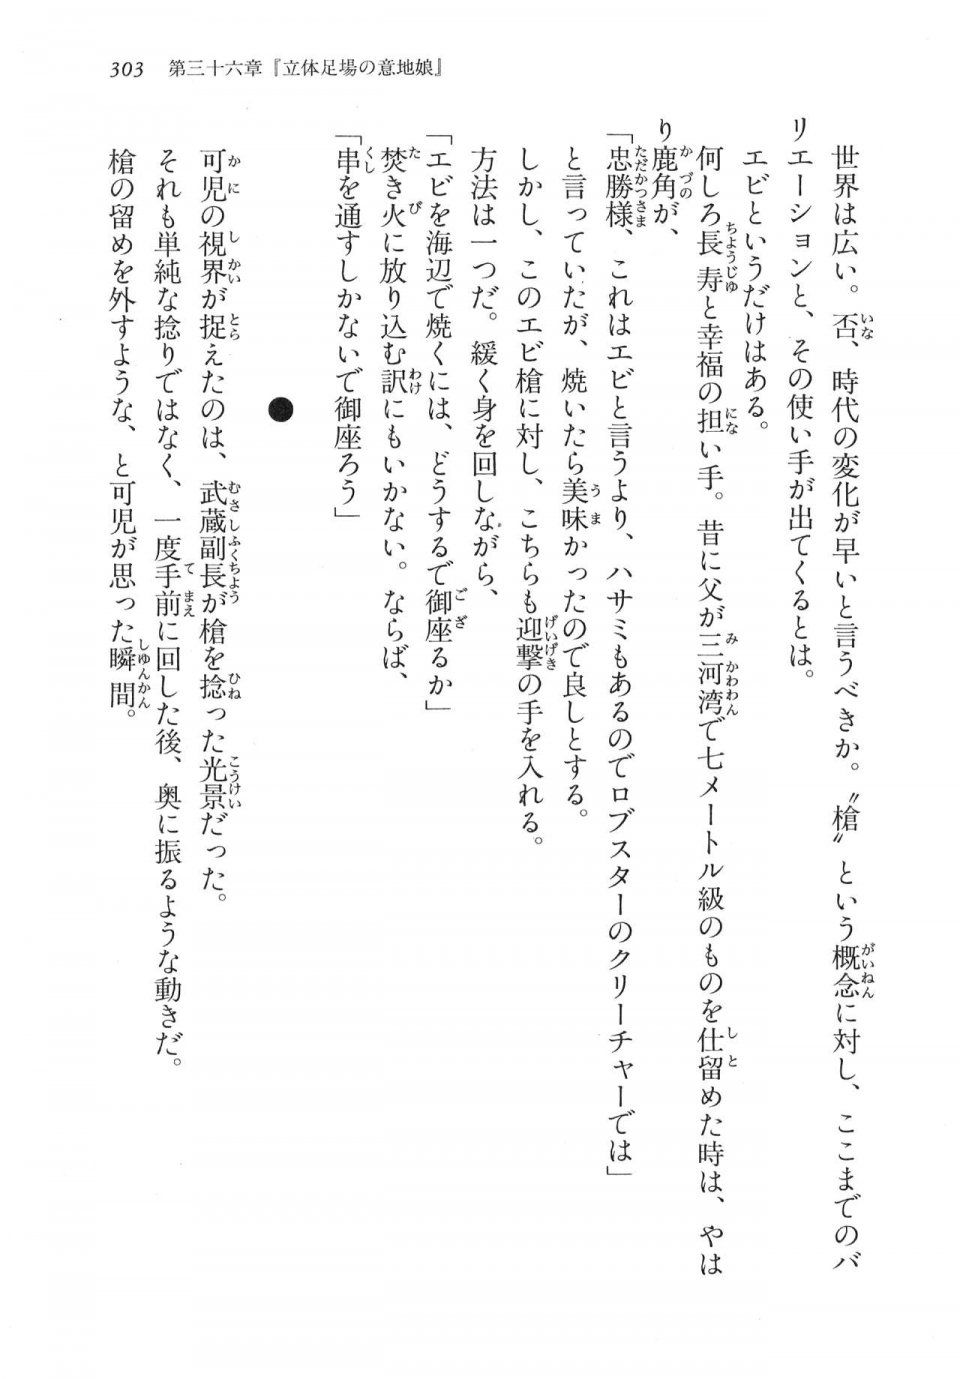 Kyoukai Senjou no Horizon LN Vol 17(7B) - Photo #303